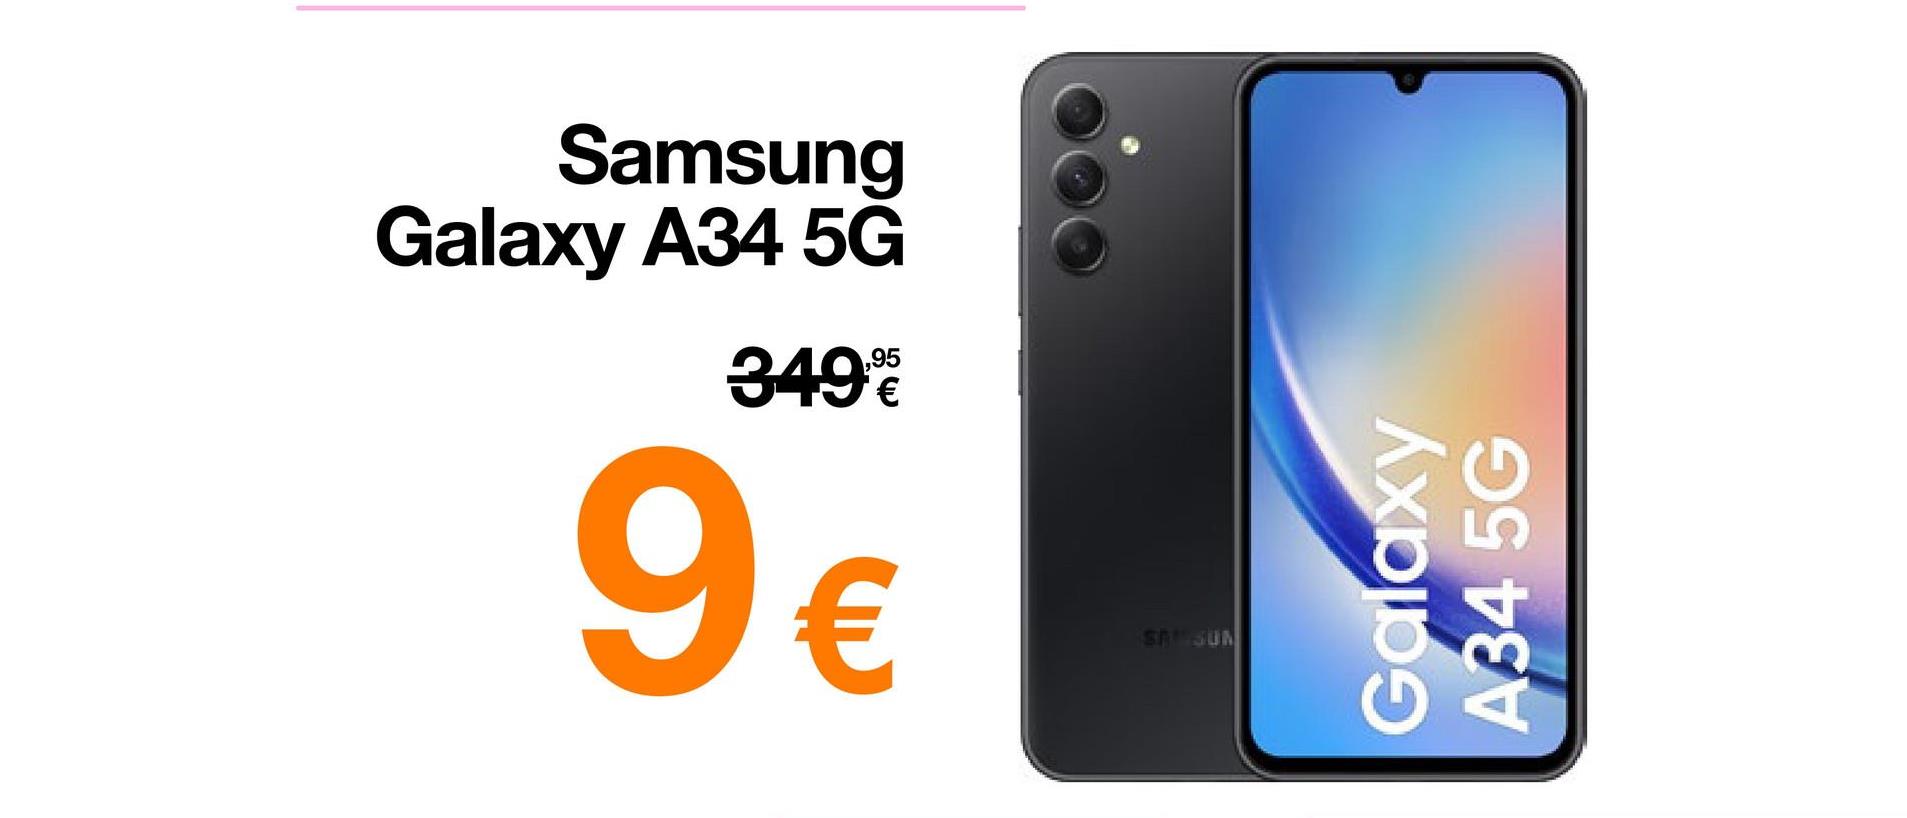 Samsung
Galaxy A34 5G
349€
9€
SA SUN
Galaxy
A34 5G